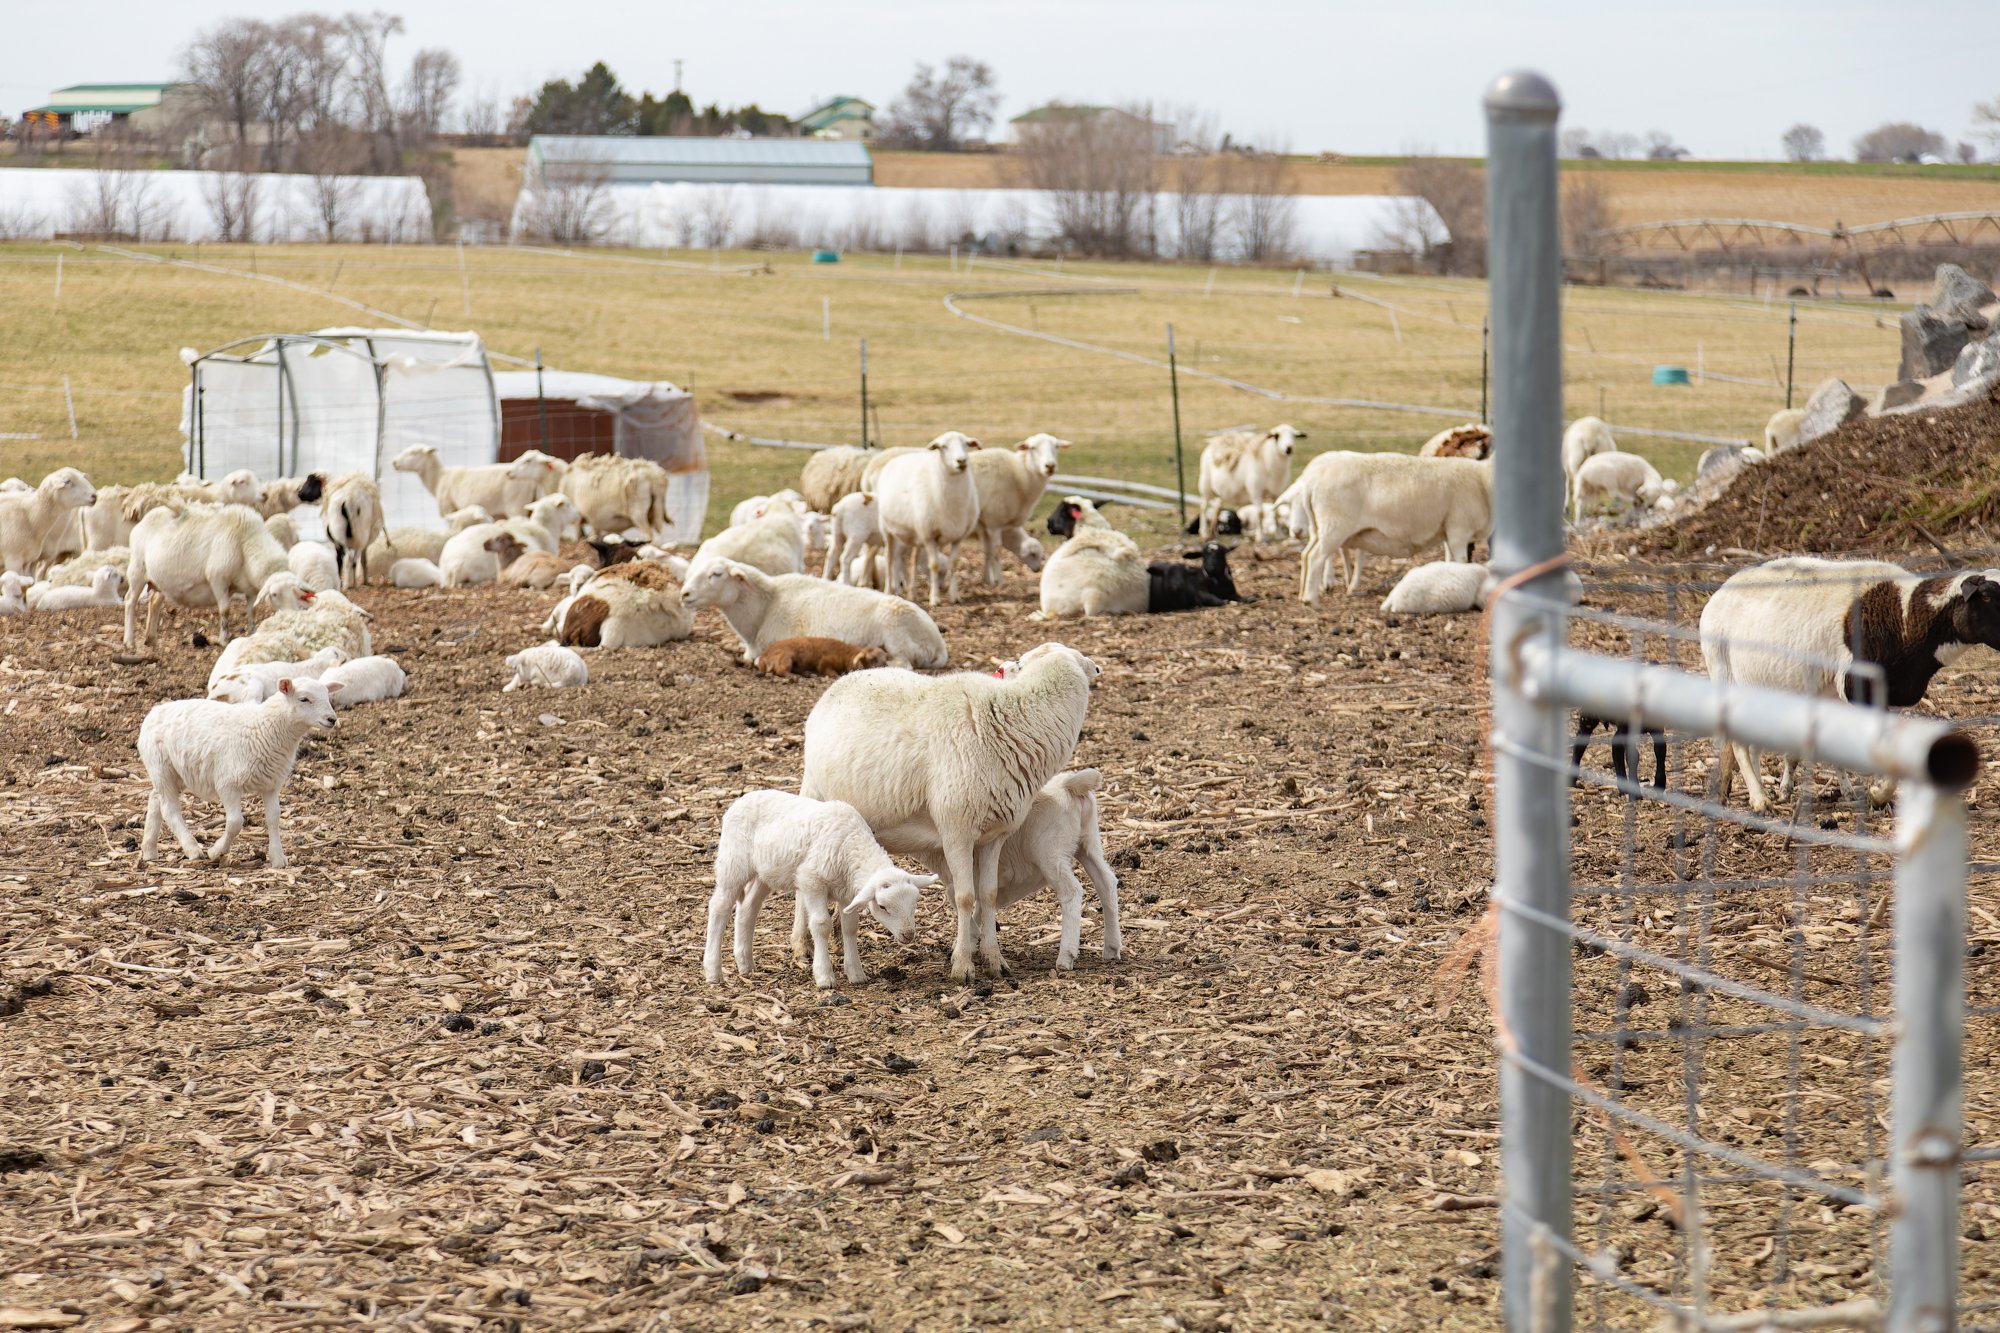 A ewe nurses her lambs.